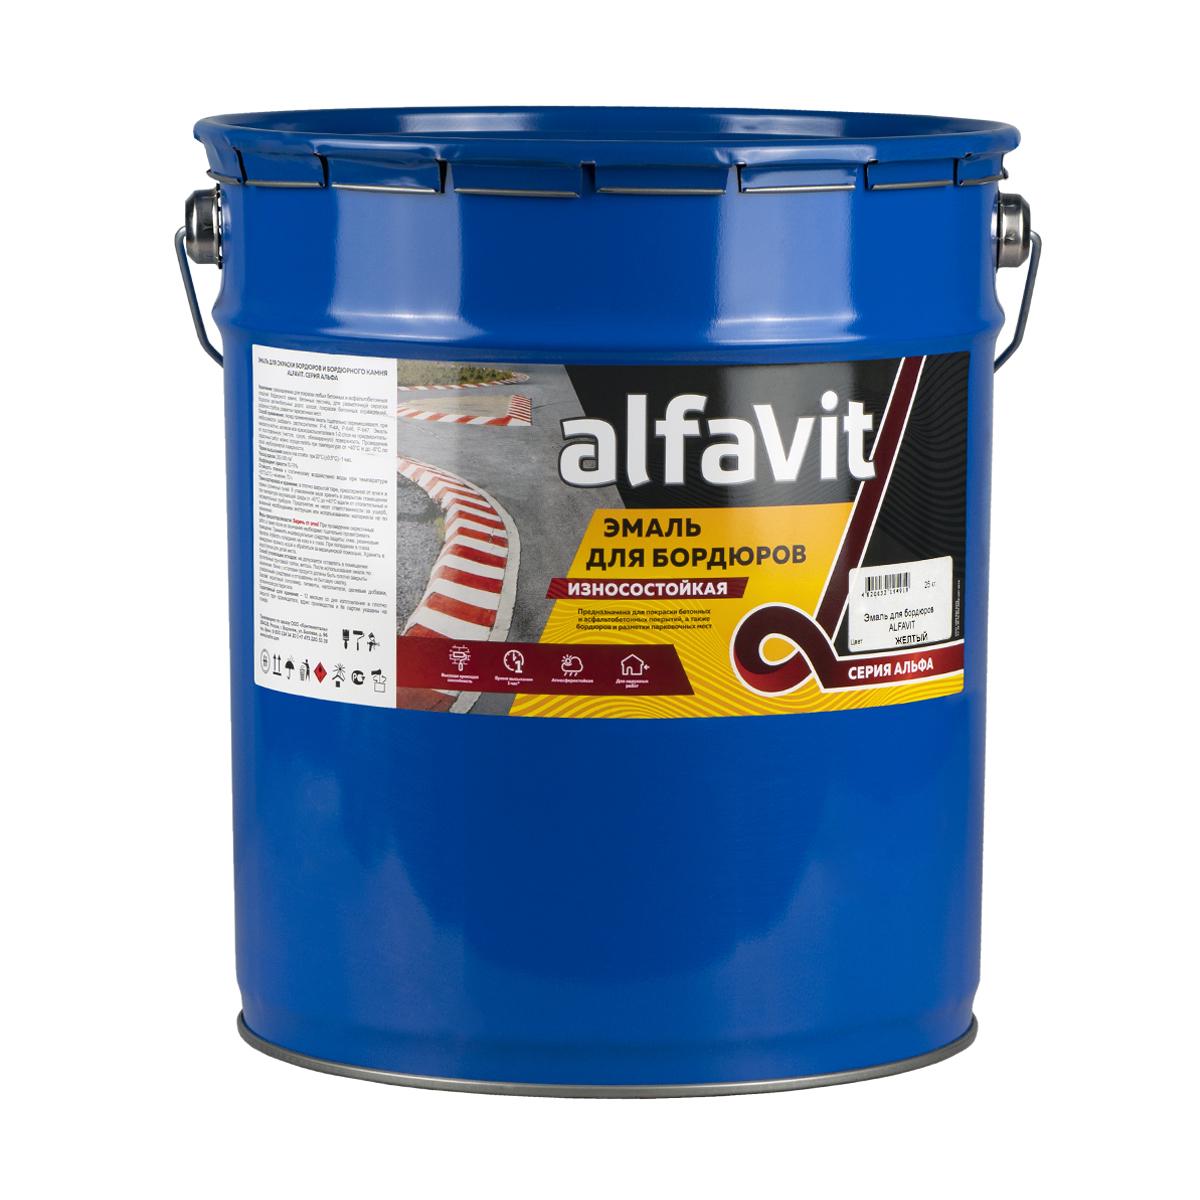 Купить Эмаль для бордюров (износостойкая) "Alfavit" желтая 25 кг (1) серия альфа